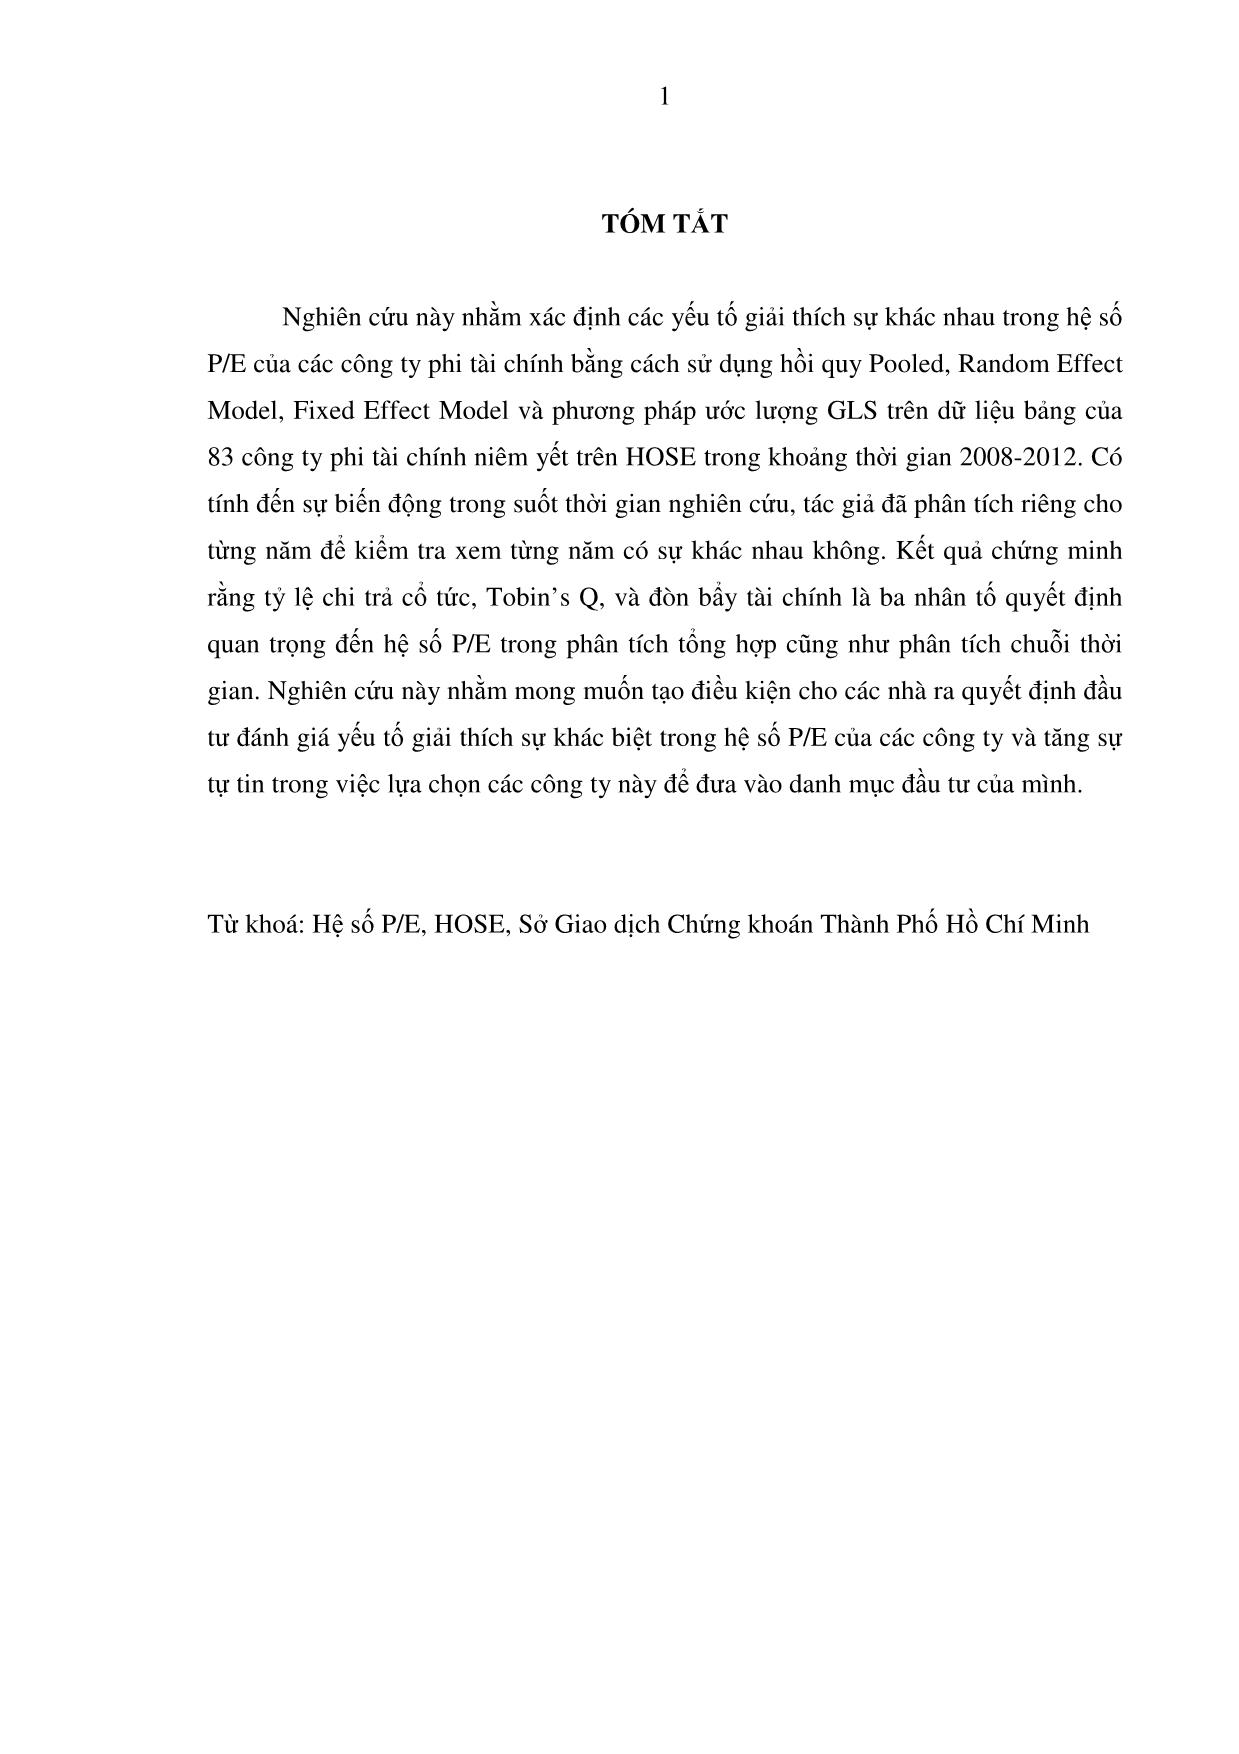 Các yếu tố quyết định đến hệ số p / e của các công ty phi tài chính niêm yết trên sở giao dịch chứng khoán thành phố Hồ Chí Minh (hose) trang 10